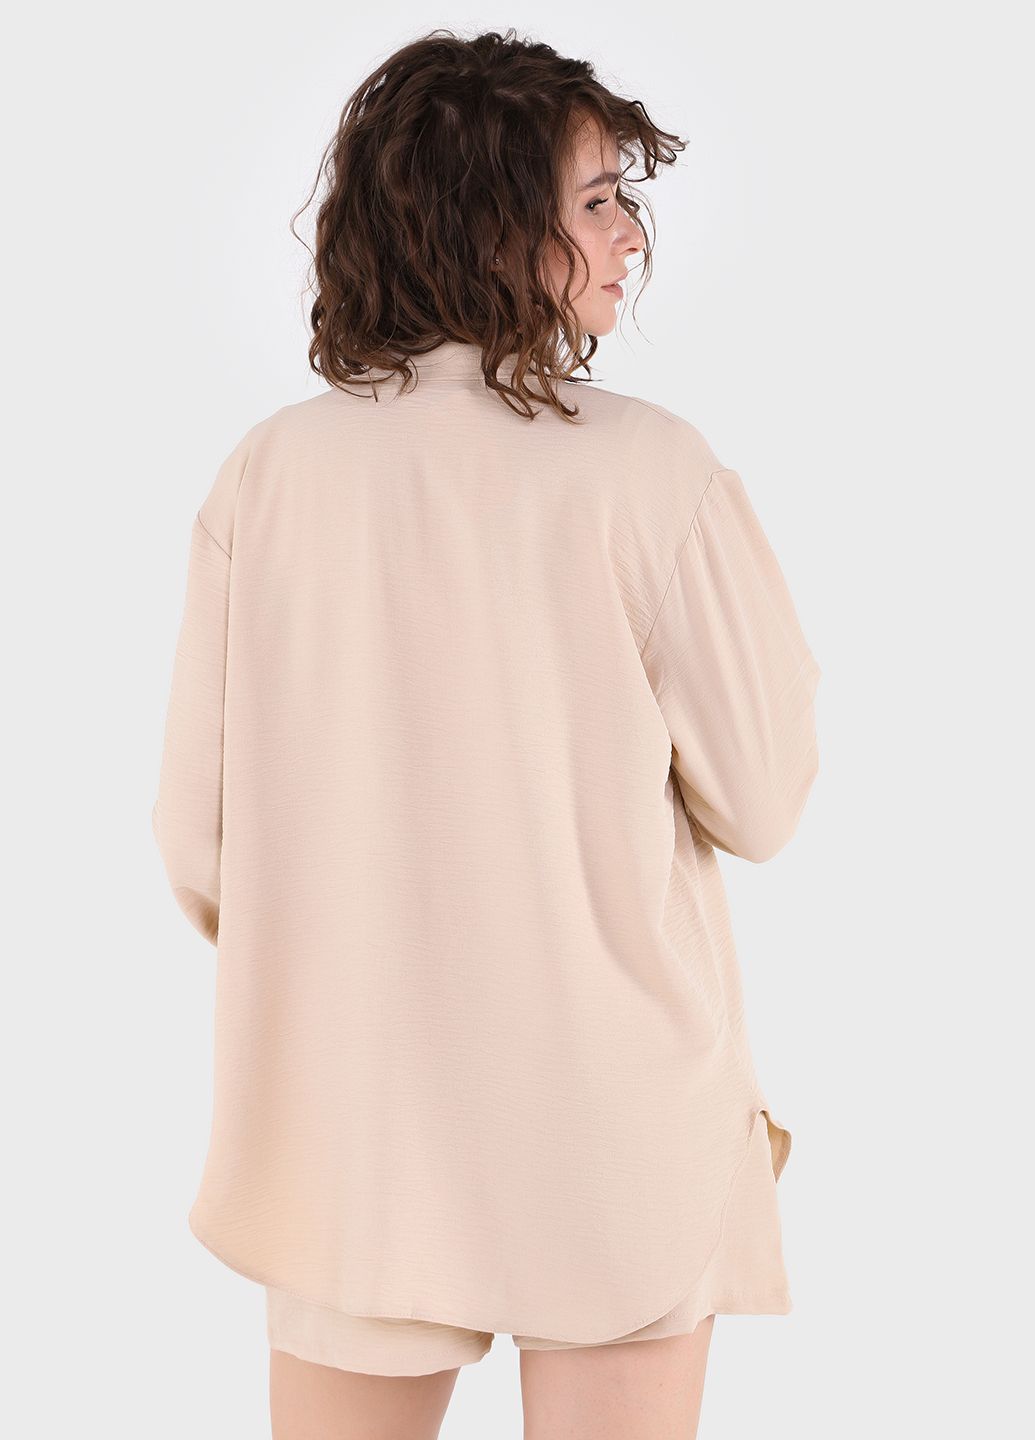 Купить Модный летний костюм женский бежевого цвета Merlini Лето 100000134, размер 46-48 в интернет-магазине